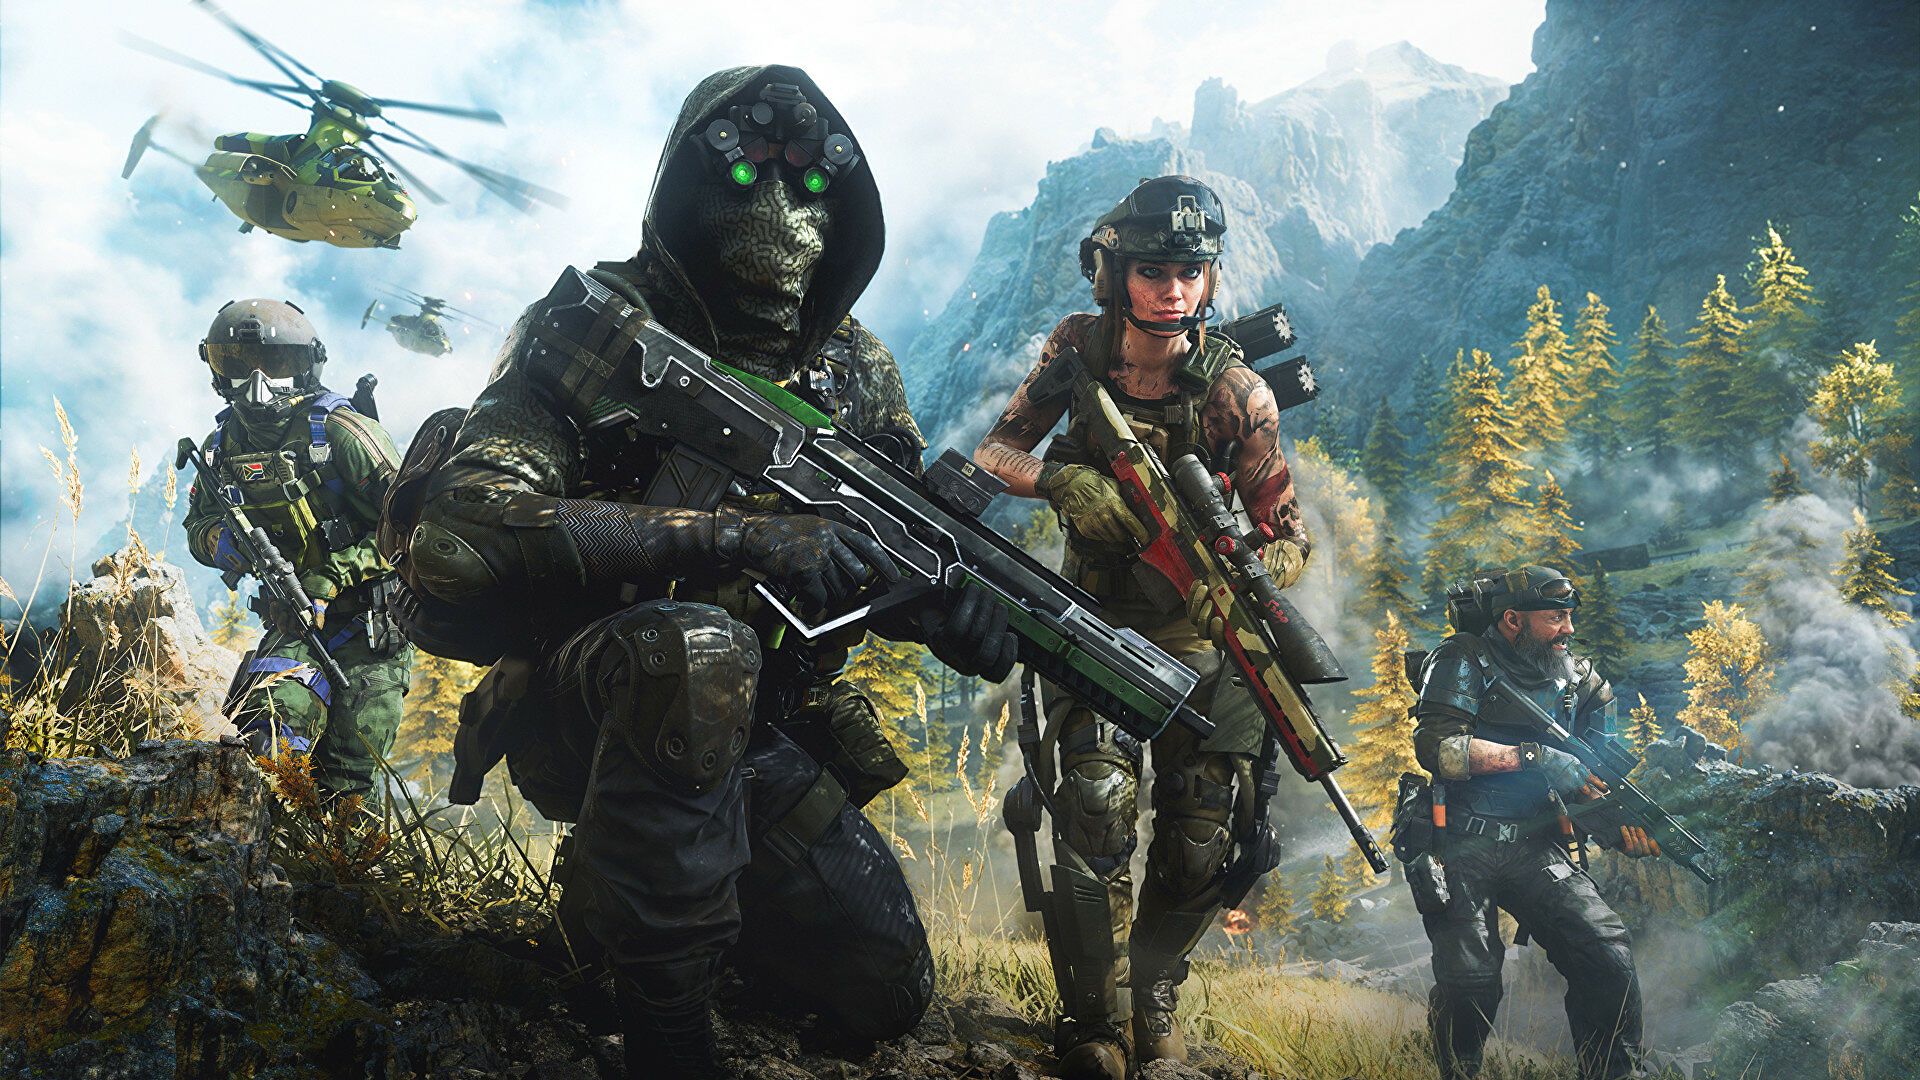 New EA studio to develop narrative campaign set in the Battlefield universe